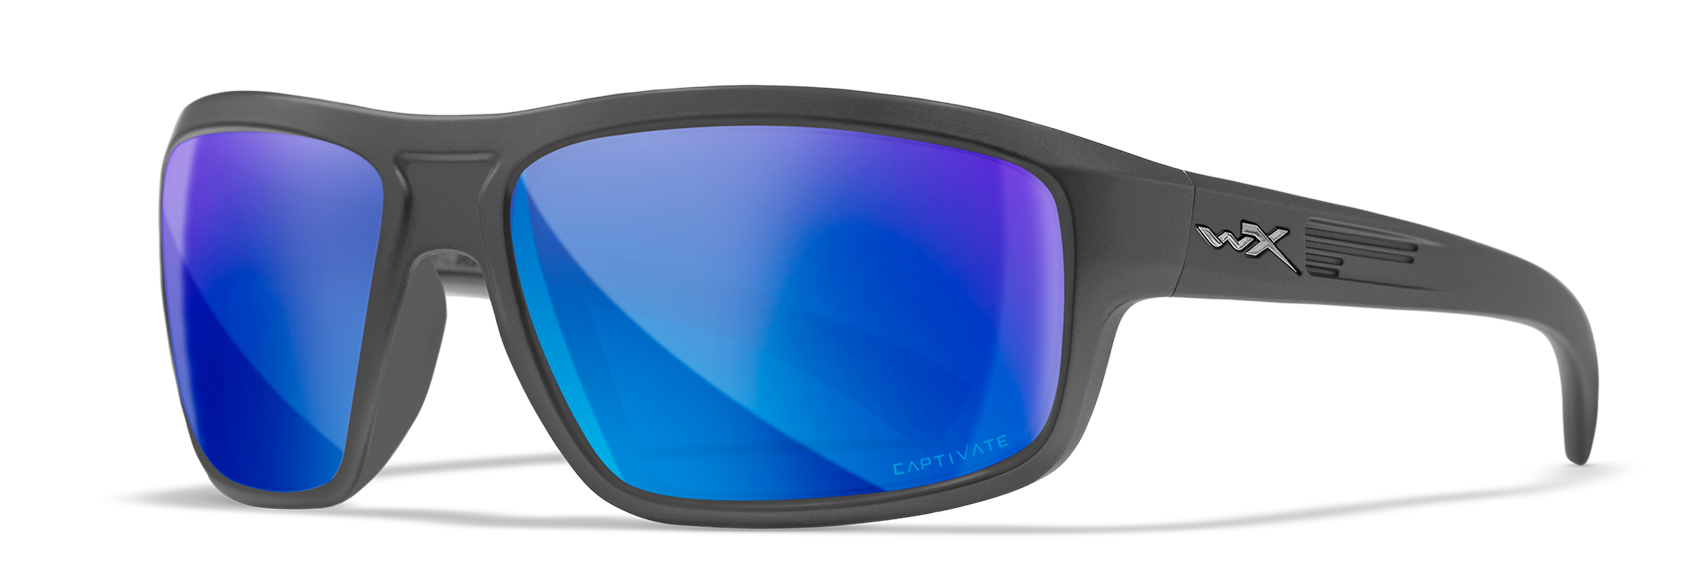 Wiley X WX CONTEND Oval Sunglasses  Matte Graphite 62-17-130